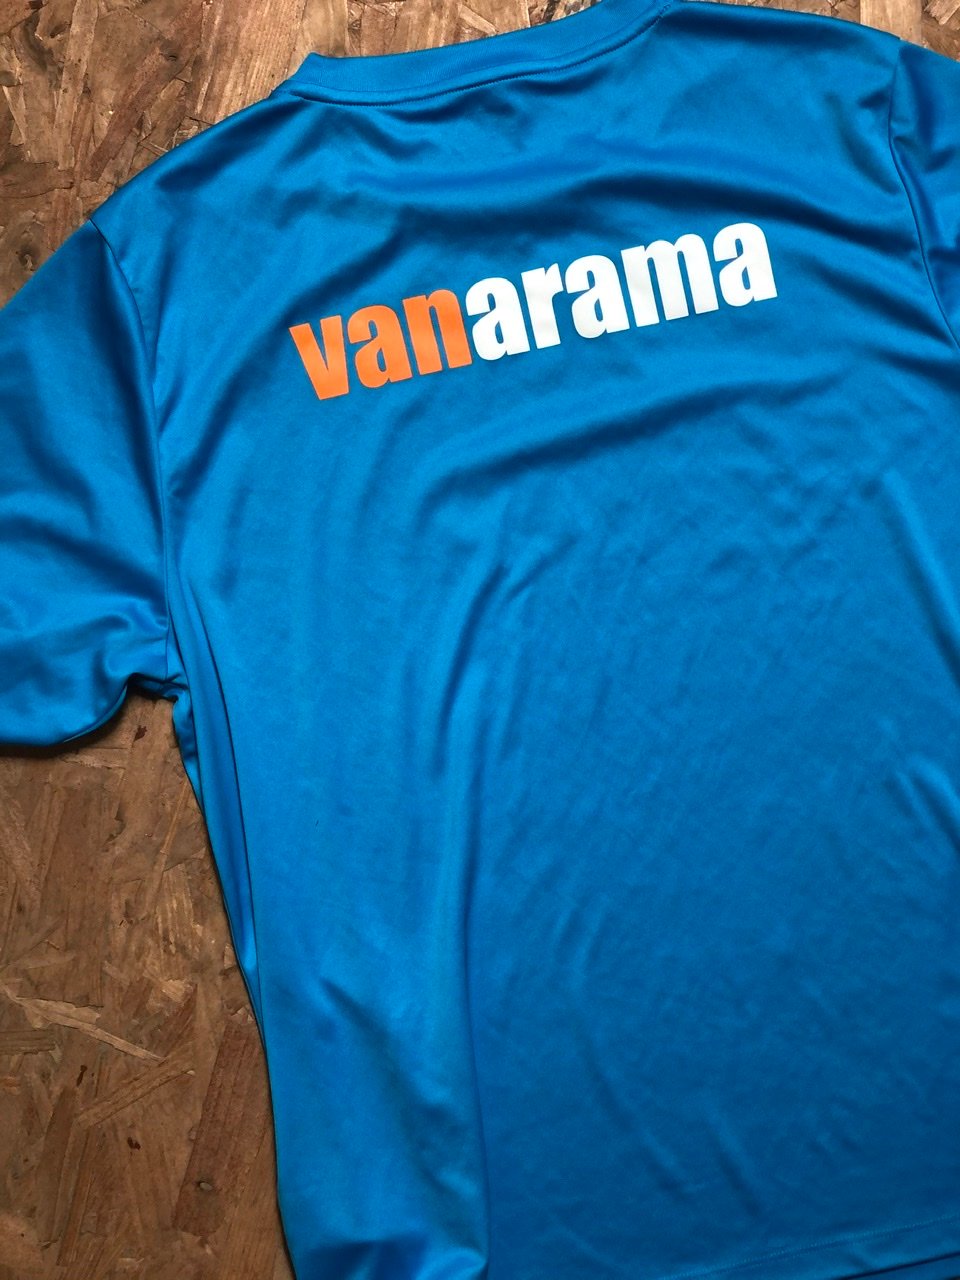 Player Issue Jako Vanarama Team T-shirt